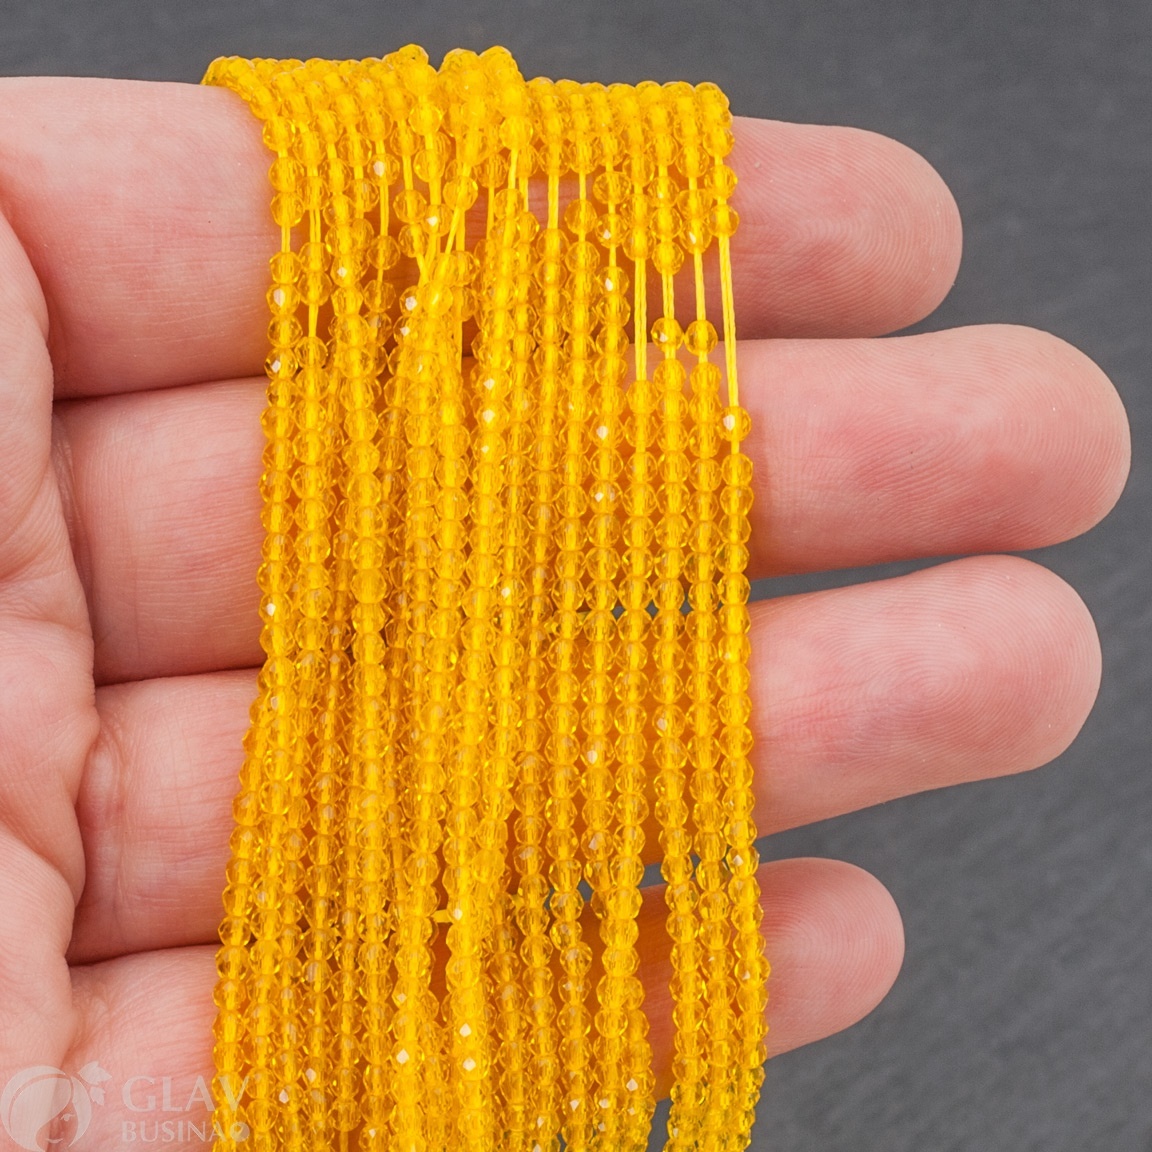 Нитка ок. 36 см / 180 хрустальных бусин на желтой нити, р-р 2х2мм, отв.0.8мм, цвет Цитрина (ярко-желтый).